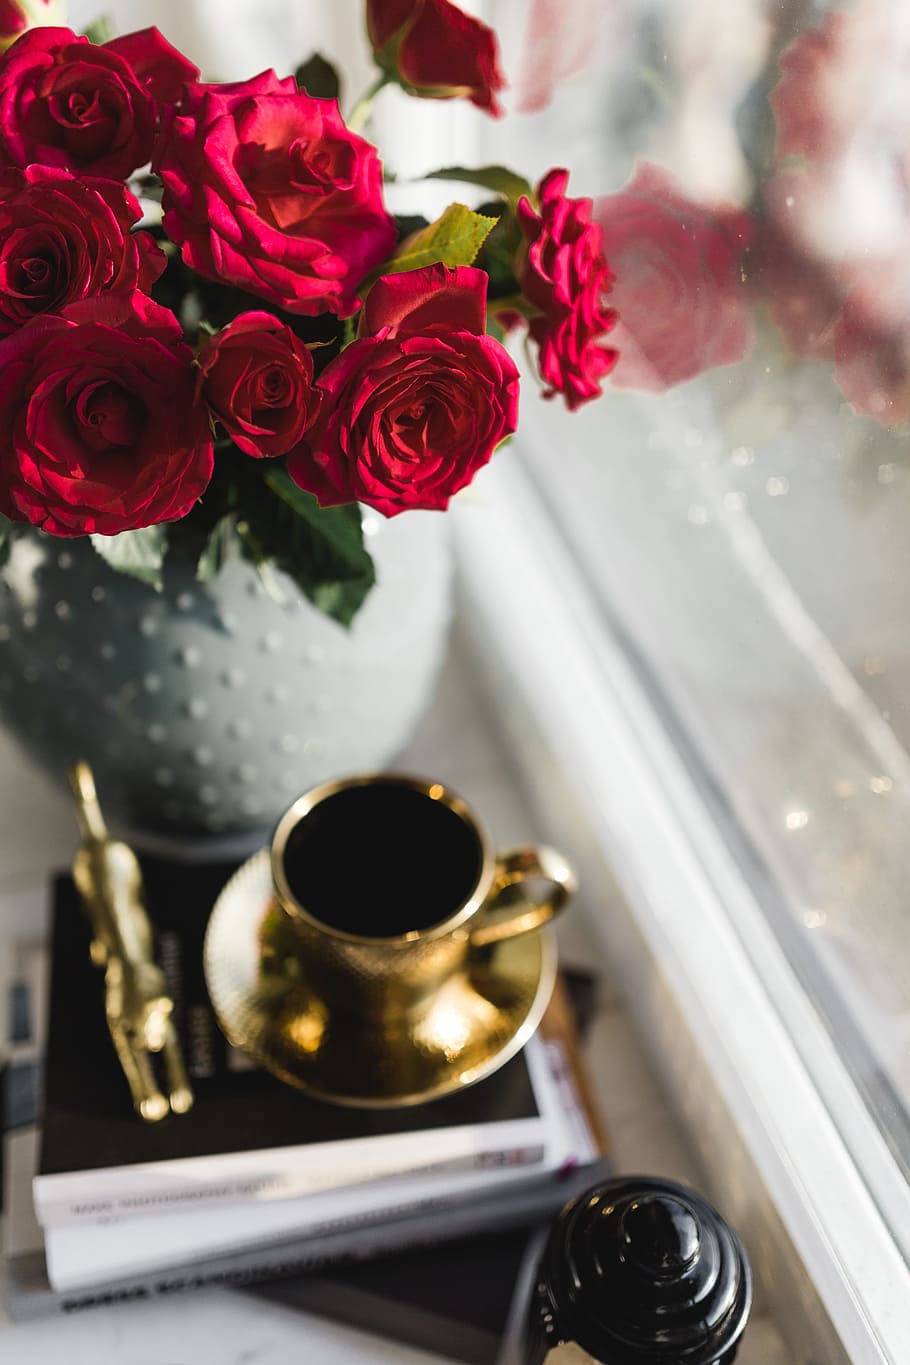 золотая чашка, кофе, красный, букет роз, цветы, розы, интерьер, предметы первой необходимости, чашка, золото